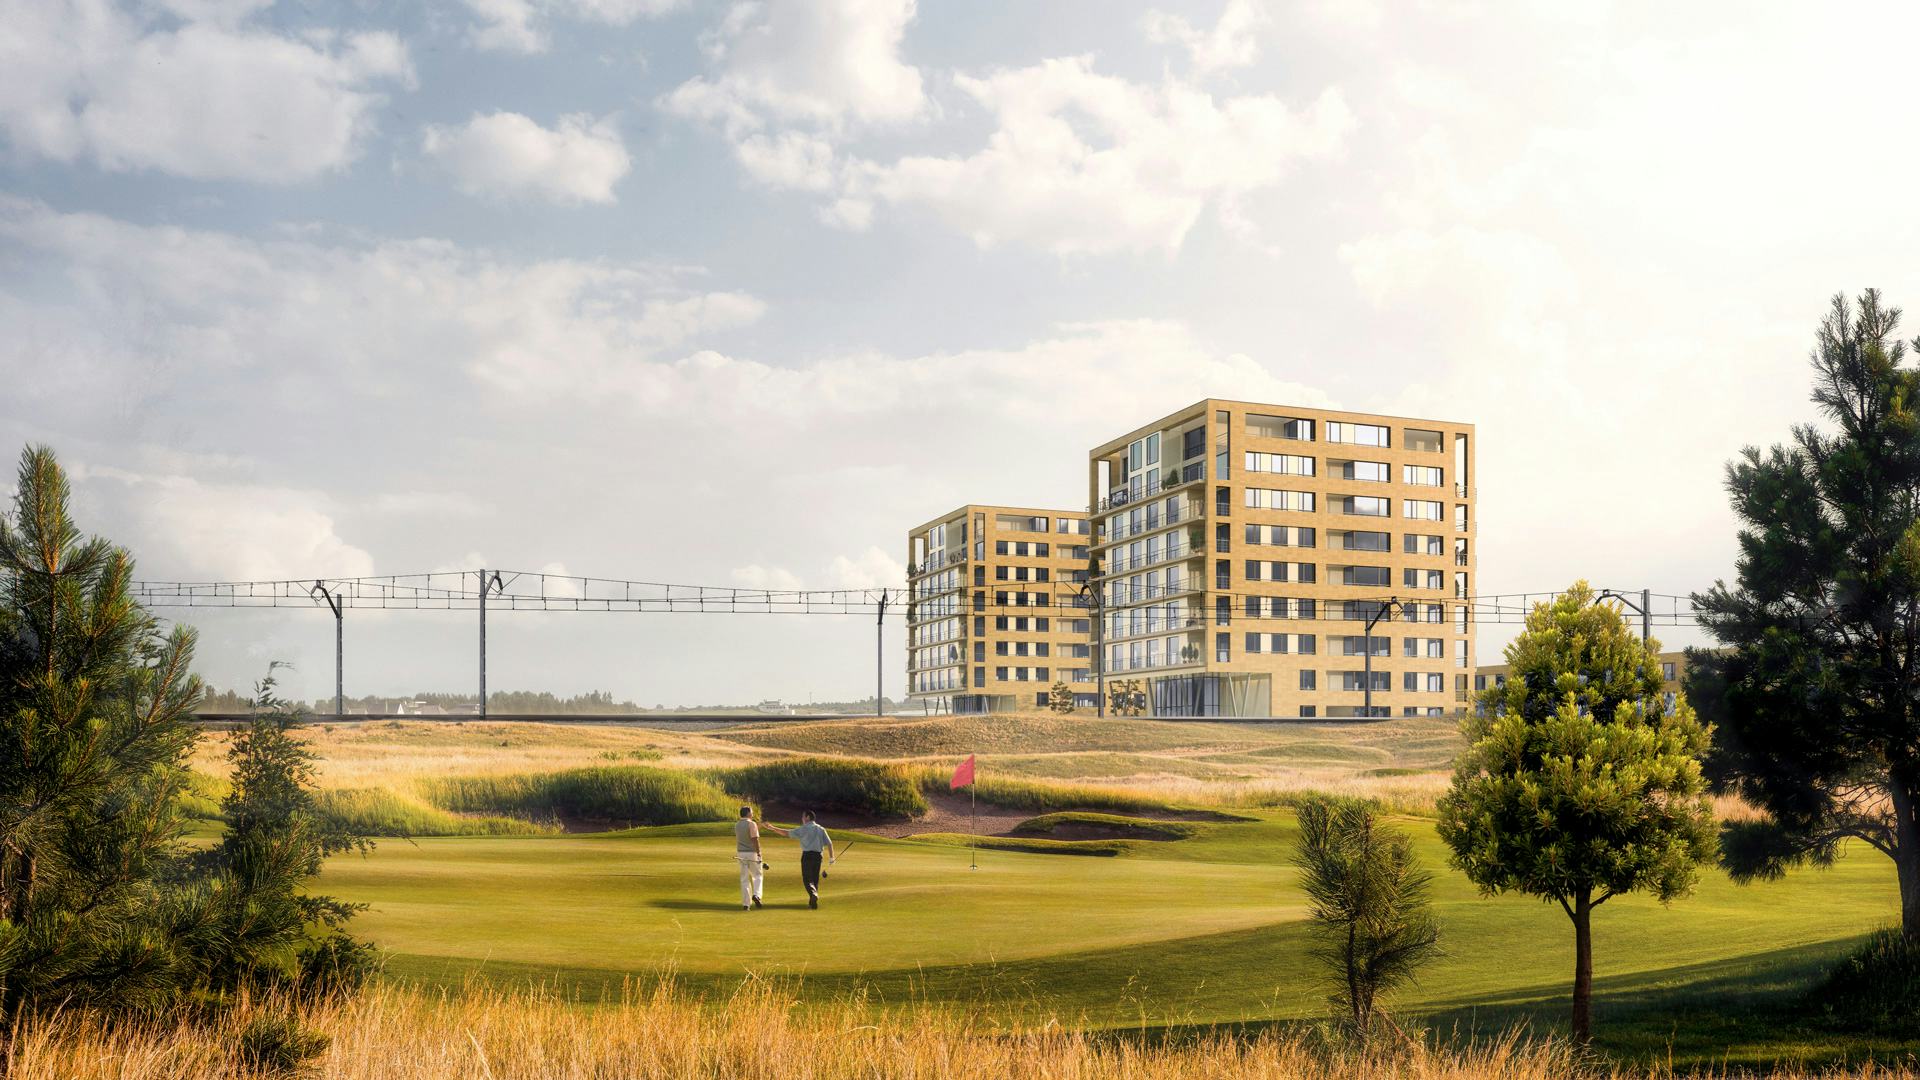 Op het bedrijventerrein Nieuw-Noord in Zandvoort ontwierp Thijs Asselbergs (ism Design3D en Van Ommeren) twee woontorens die nu in uitvoering zijn